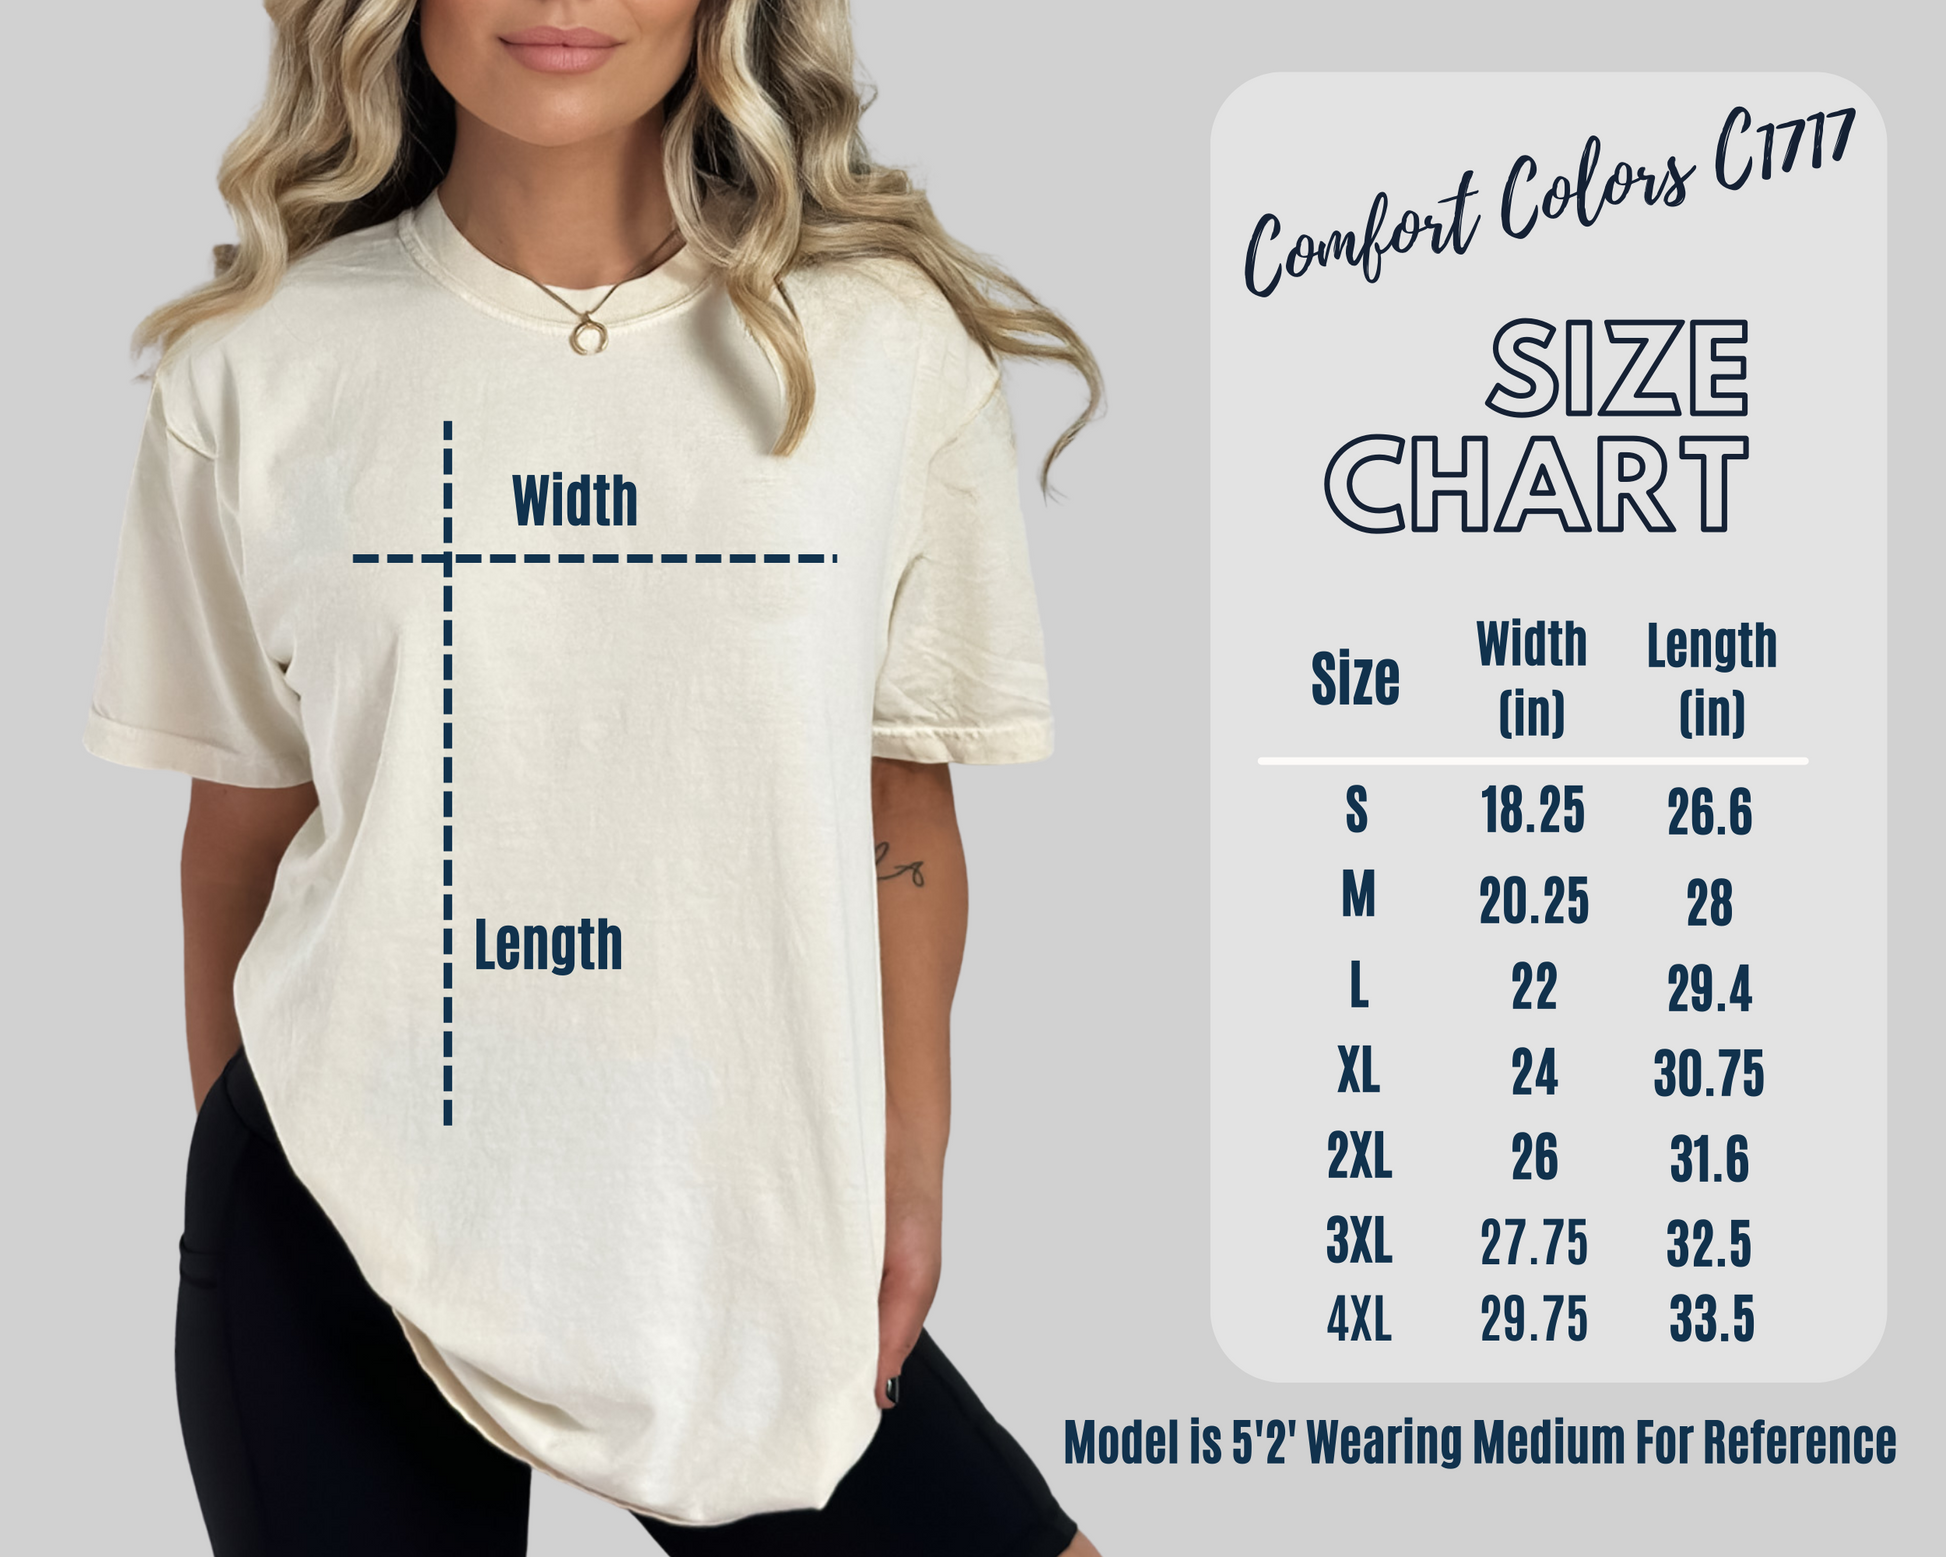 Comfort Colors C1717 Ivory Shirt CC Mockup Ivory Colored Shirt Unisex  Sizing Model Mock up Tee Size Chart -  Canada